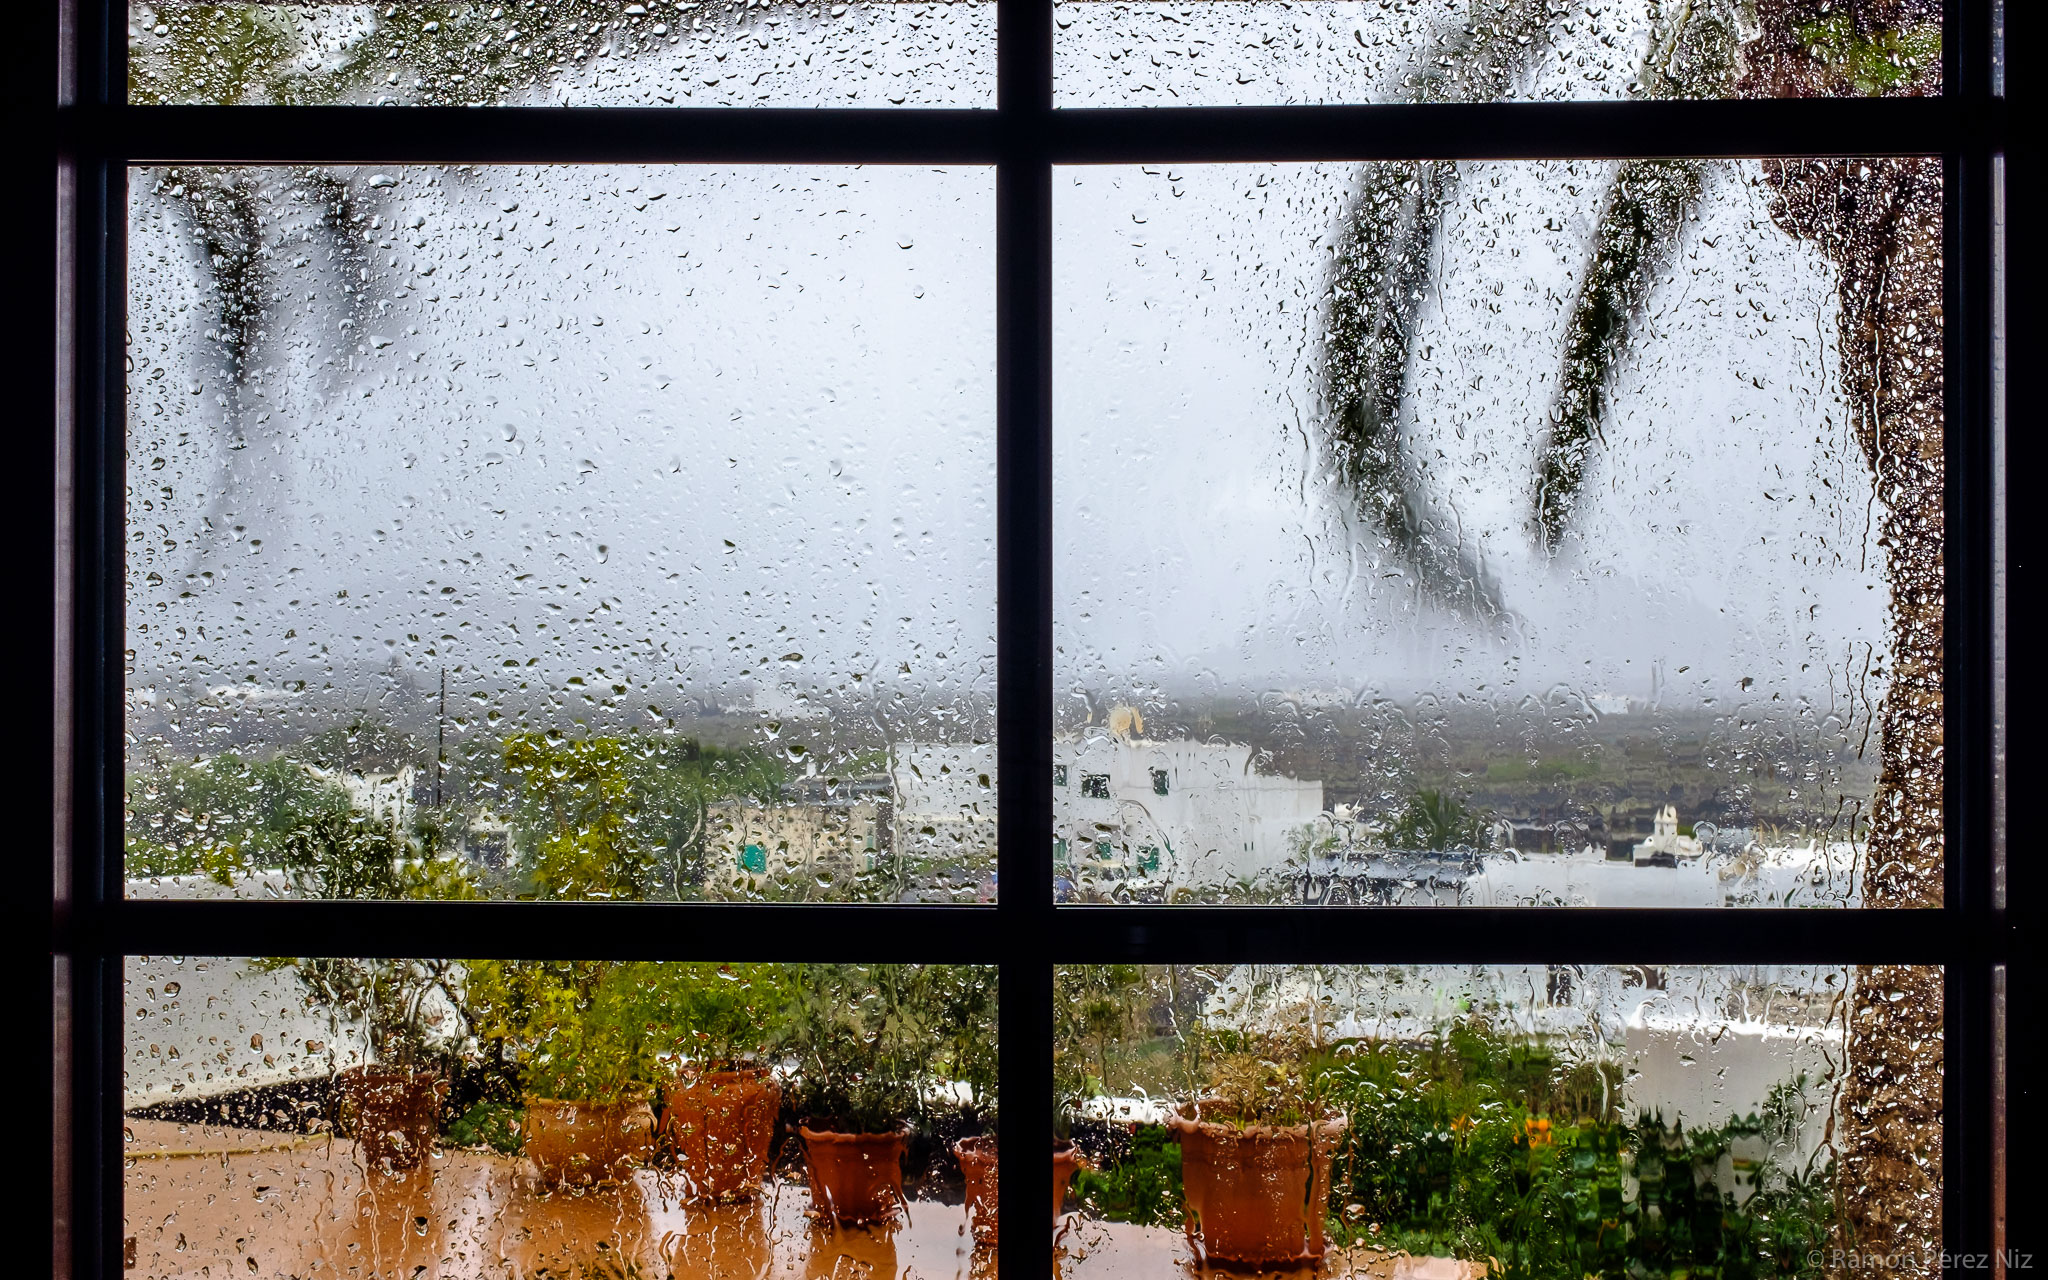 Foto de Ramón Pérez Niz con lluvia y viento